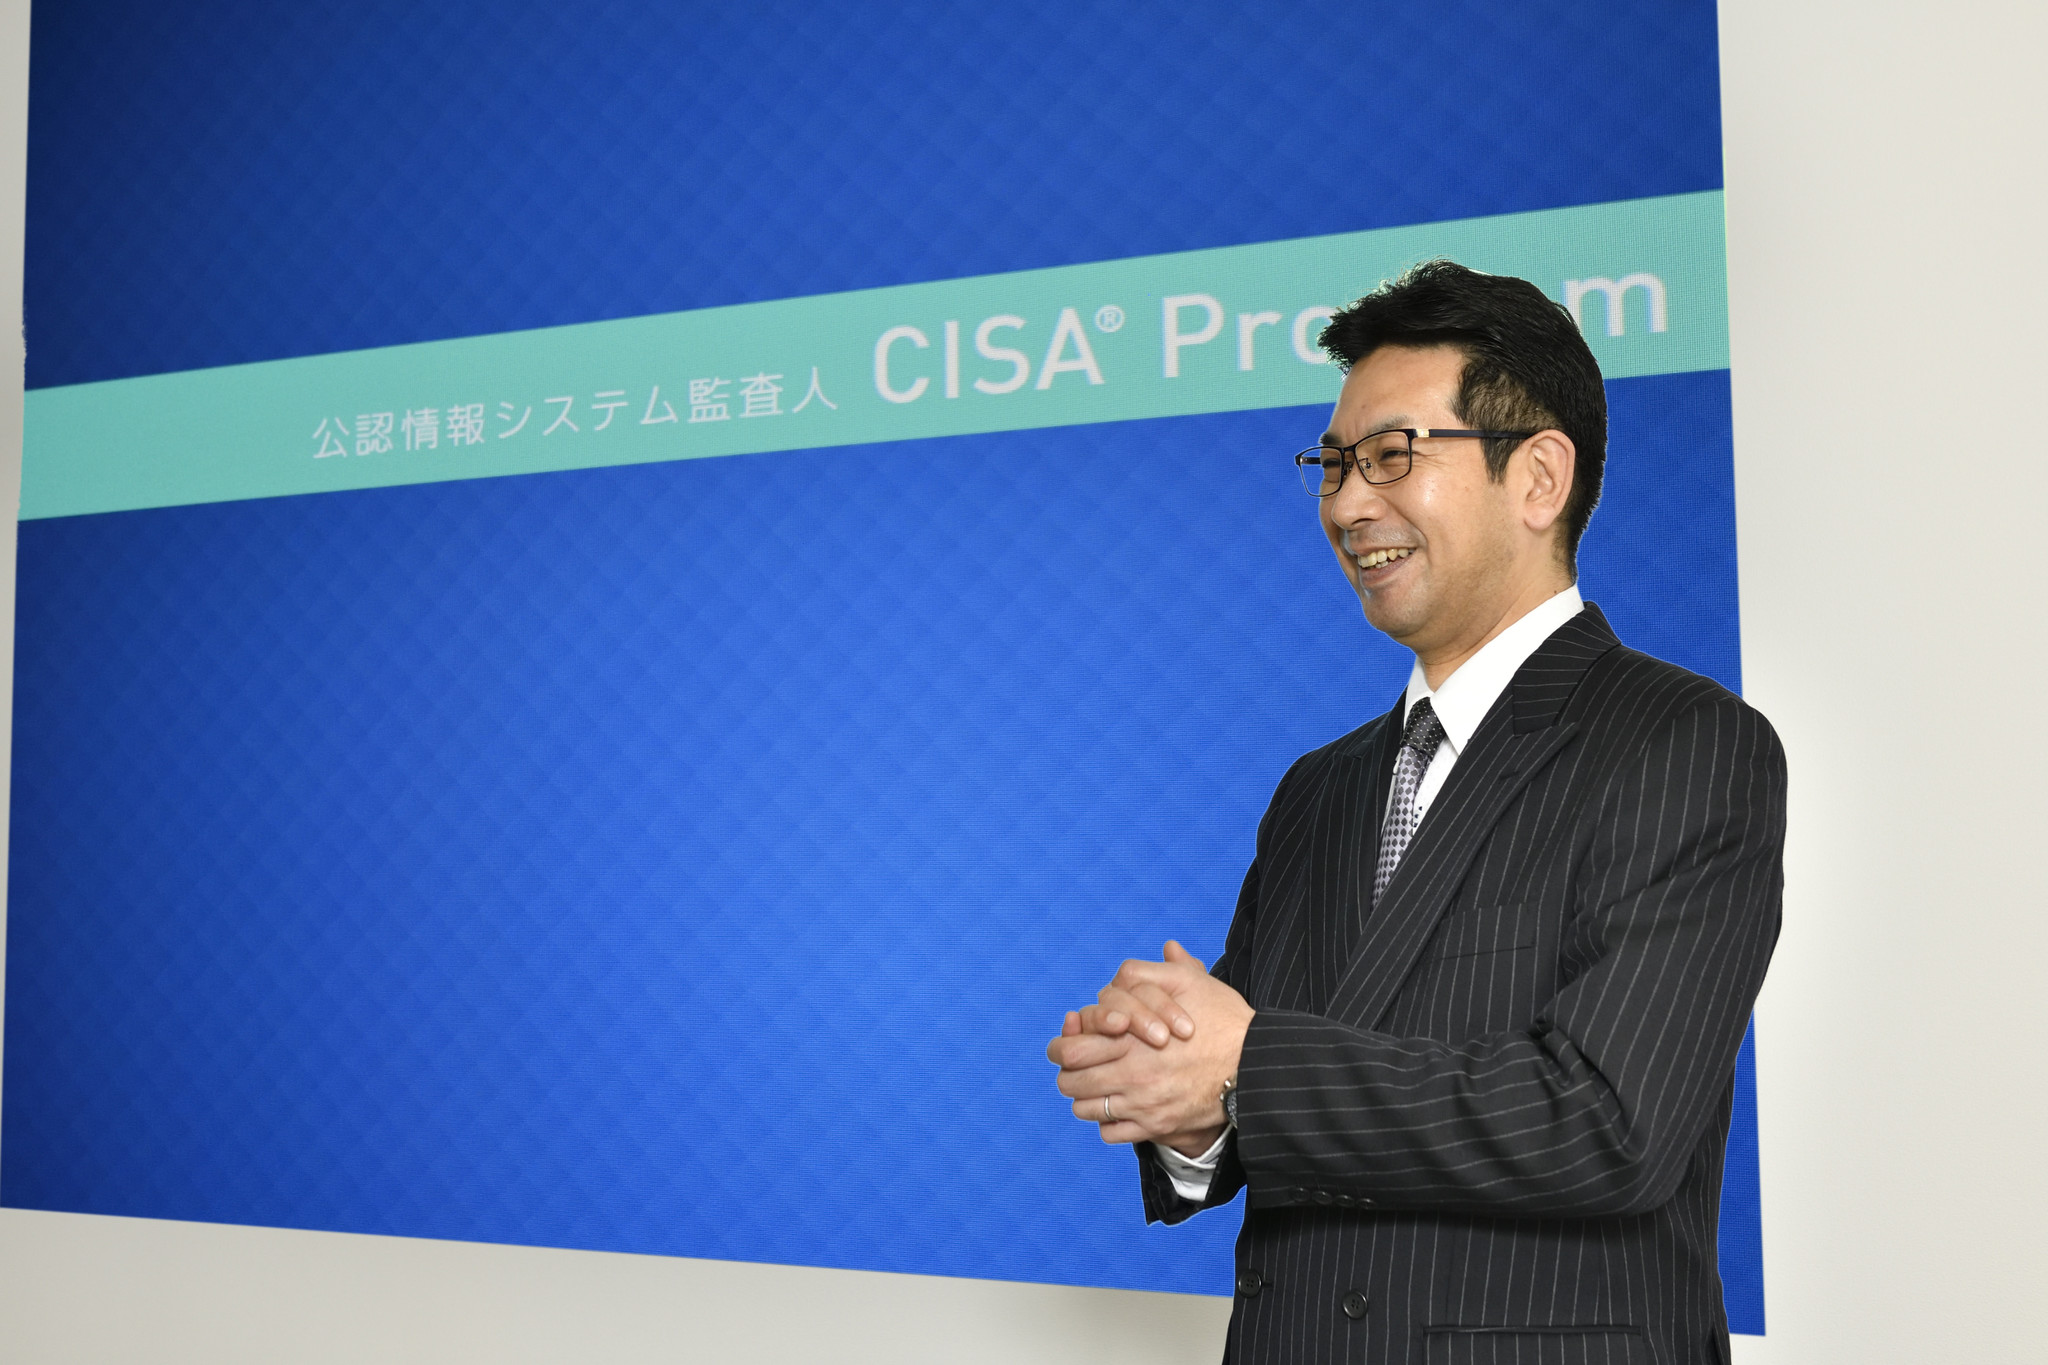 アビタスが日本初の教育認定~公認情報システム監査人(CISA®)資格~｜株式会社アビタスのプレスリリース